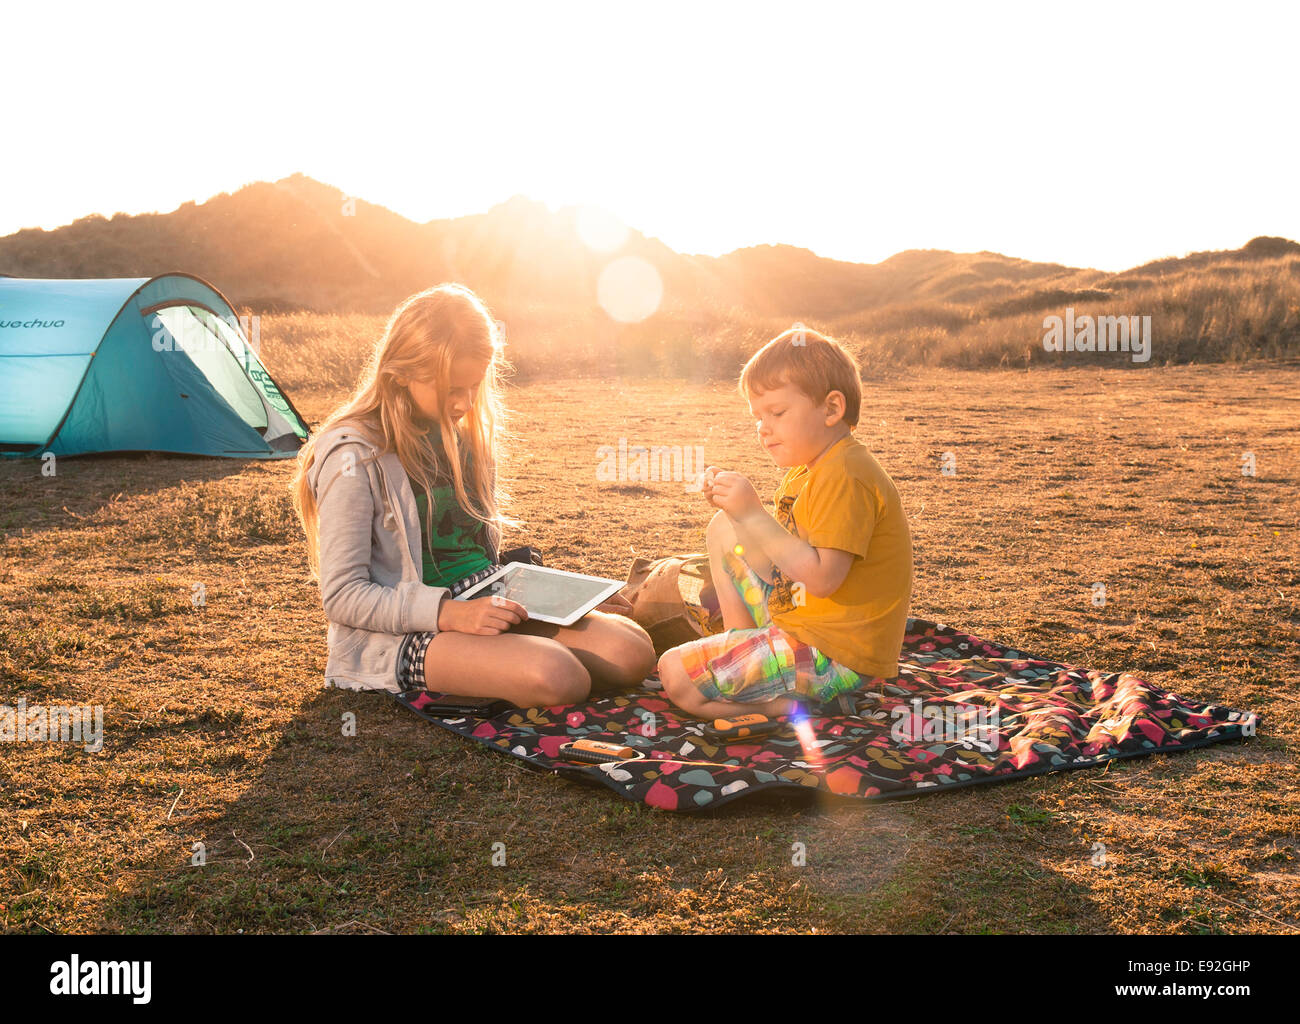 Bambini Il campeggio sulla coperta picnic con ipad in estate. Fratello e Sorella di camp holiday in Regno Unito Inghilterra dune di sabbia Foto Stock